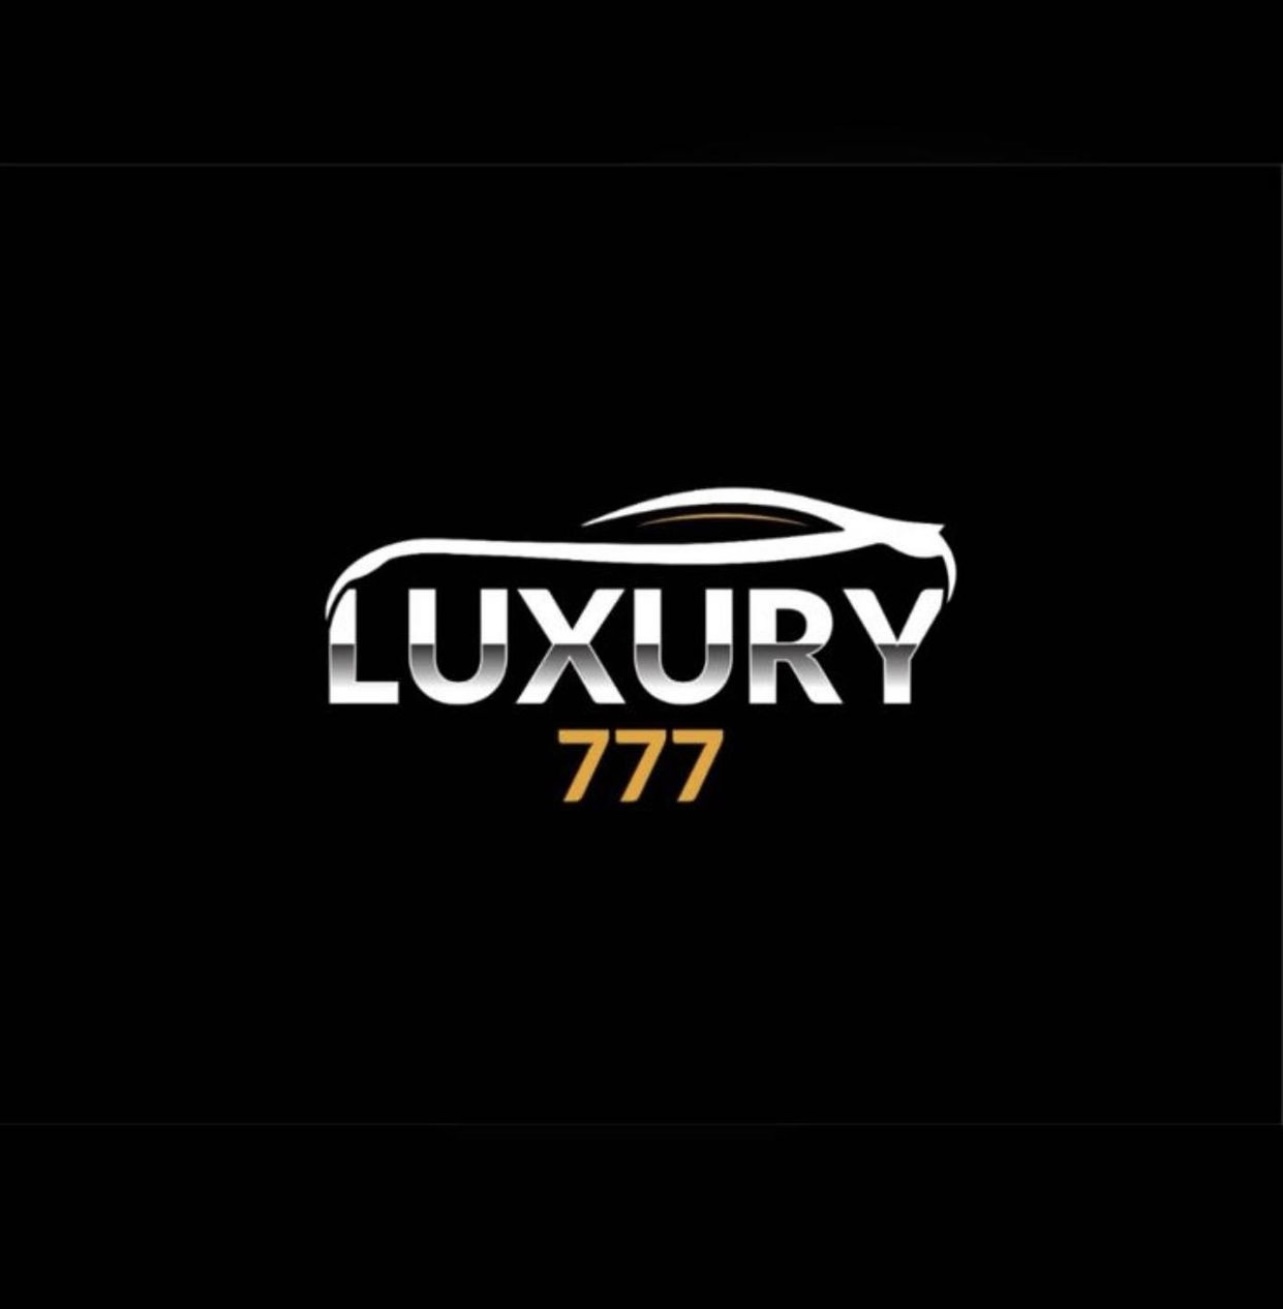 Luxury777